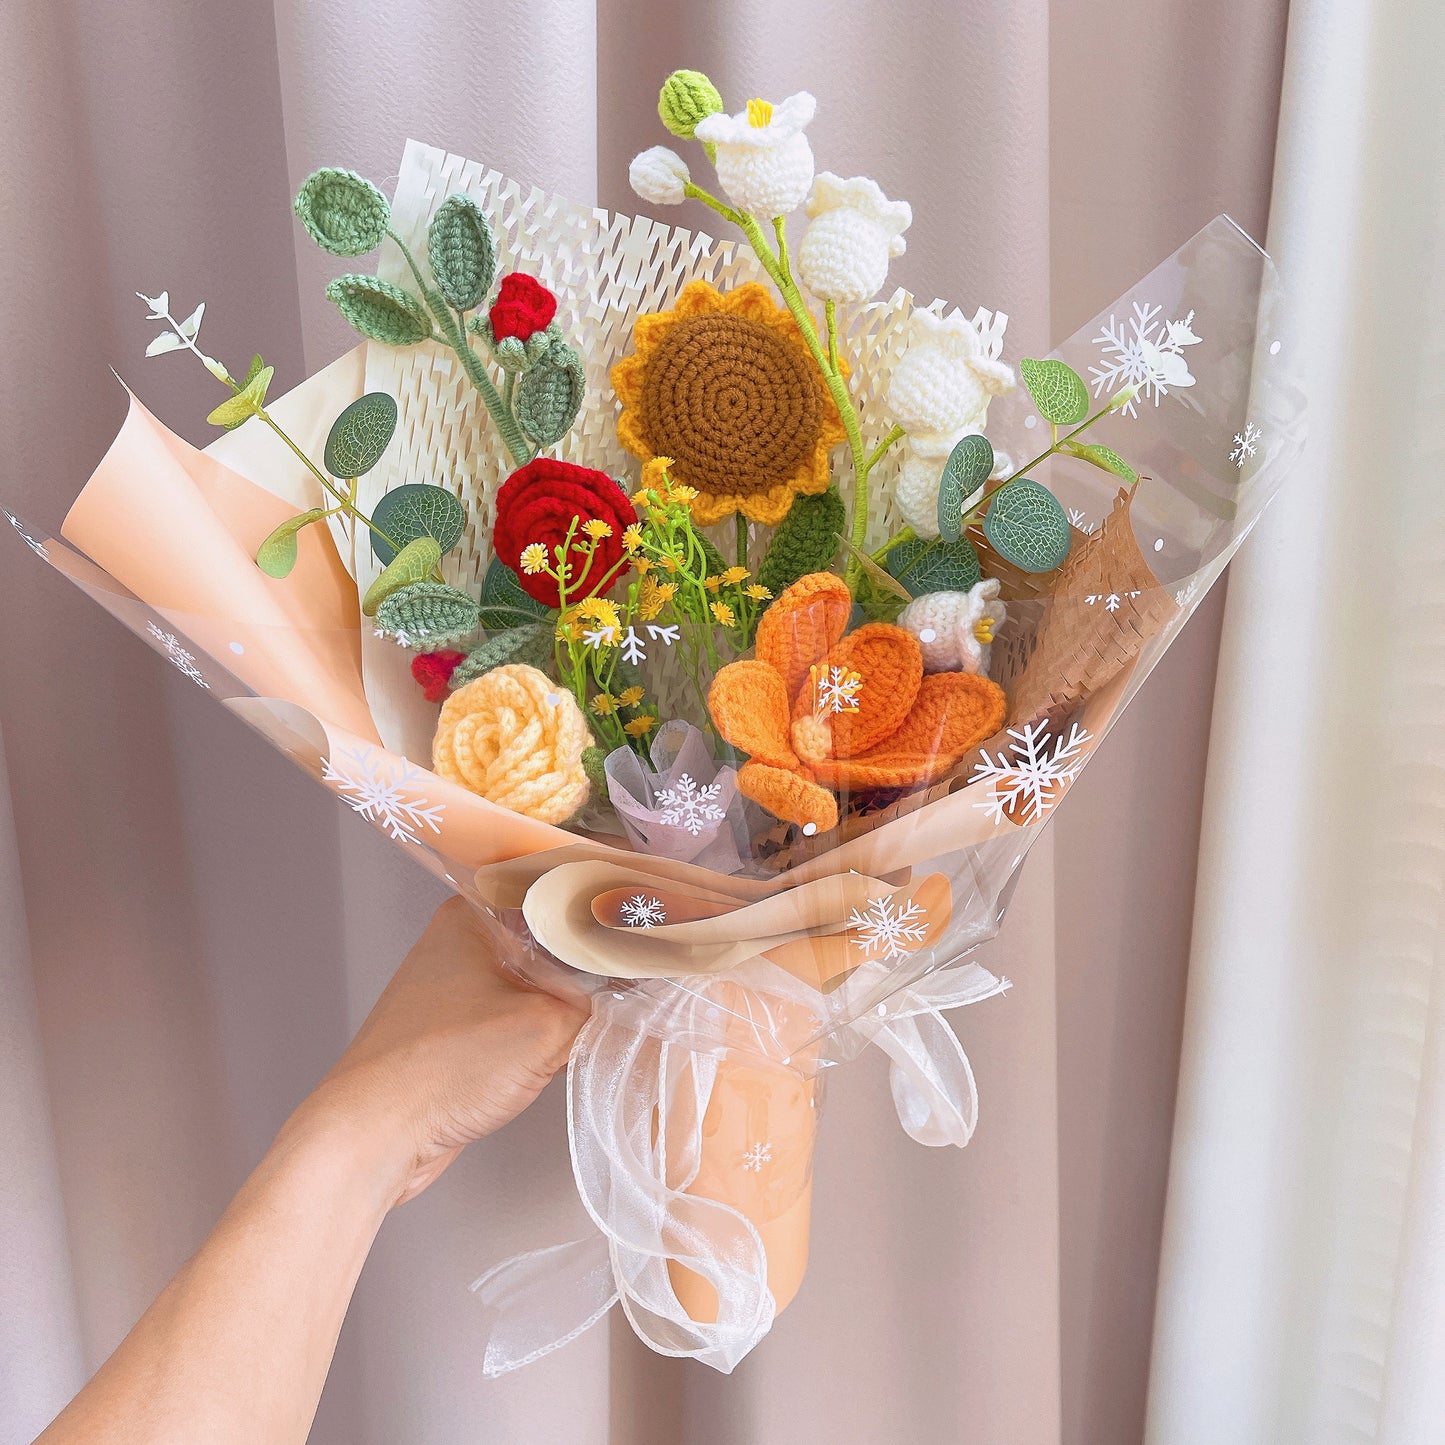 Bouquet jaune doux au crochet fabriqué à la main avec des accents floraux rouges, orange et blancs